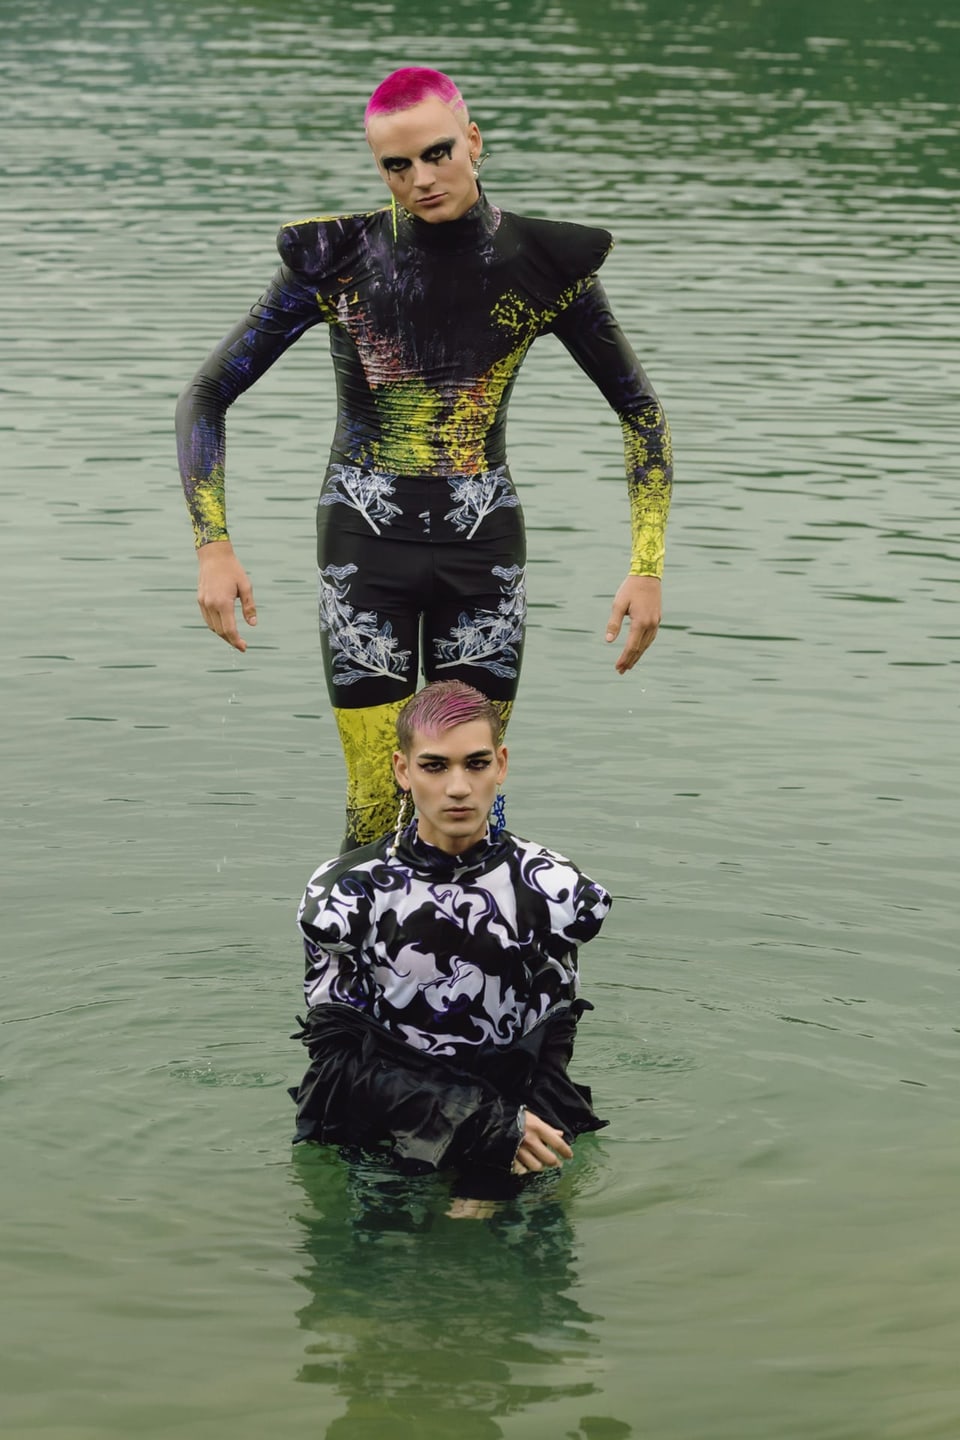 Zwei Menschen mit bunten Haaren im Wasser.